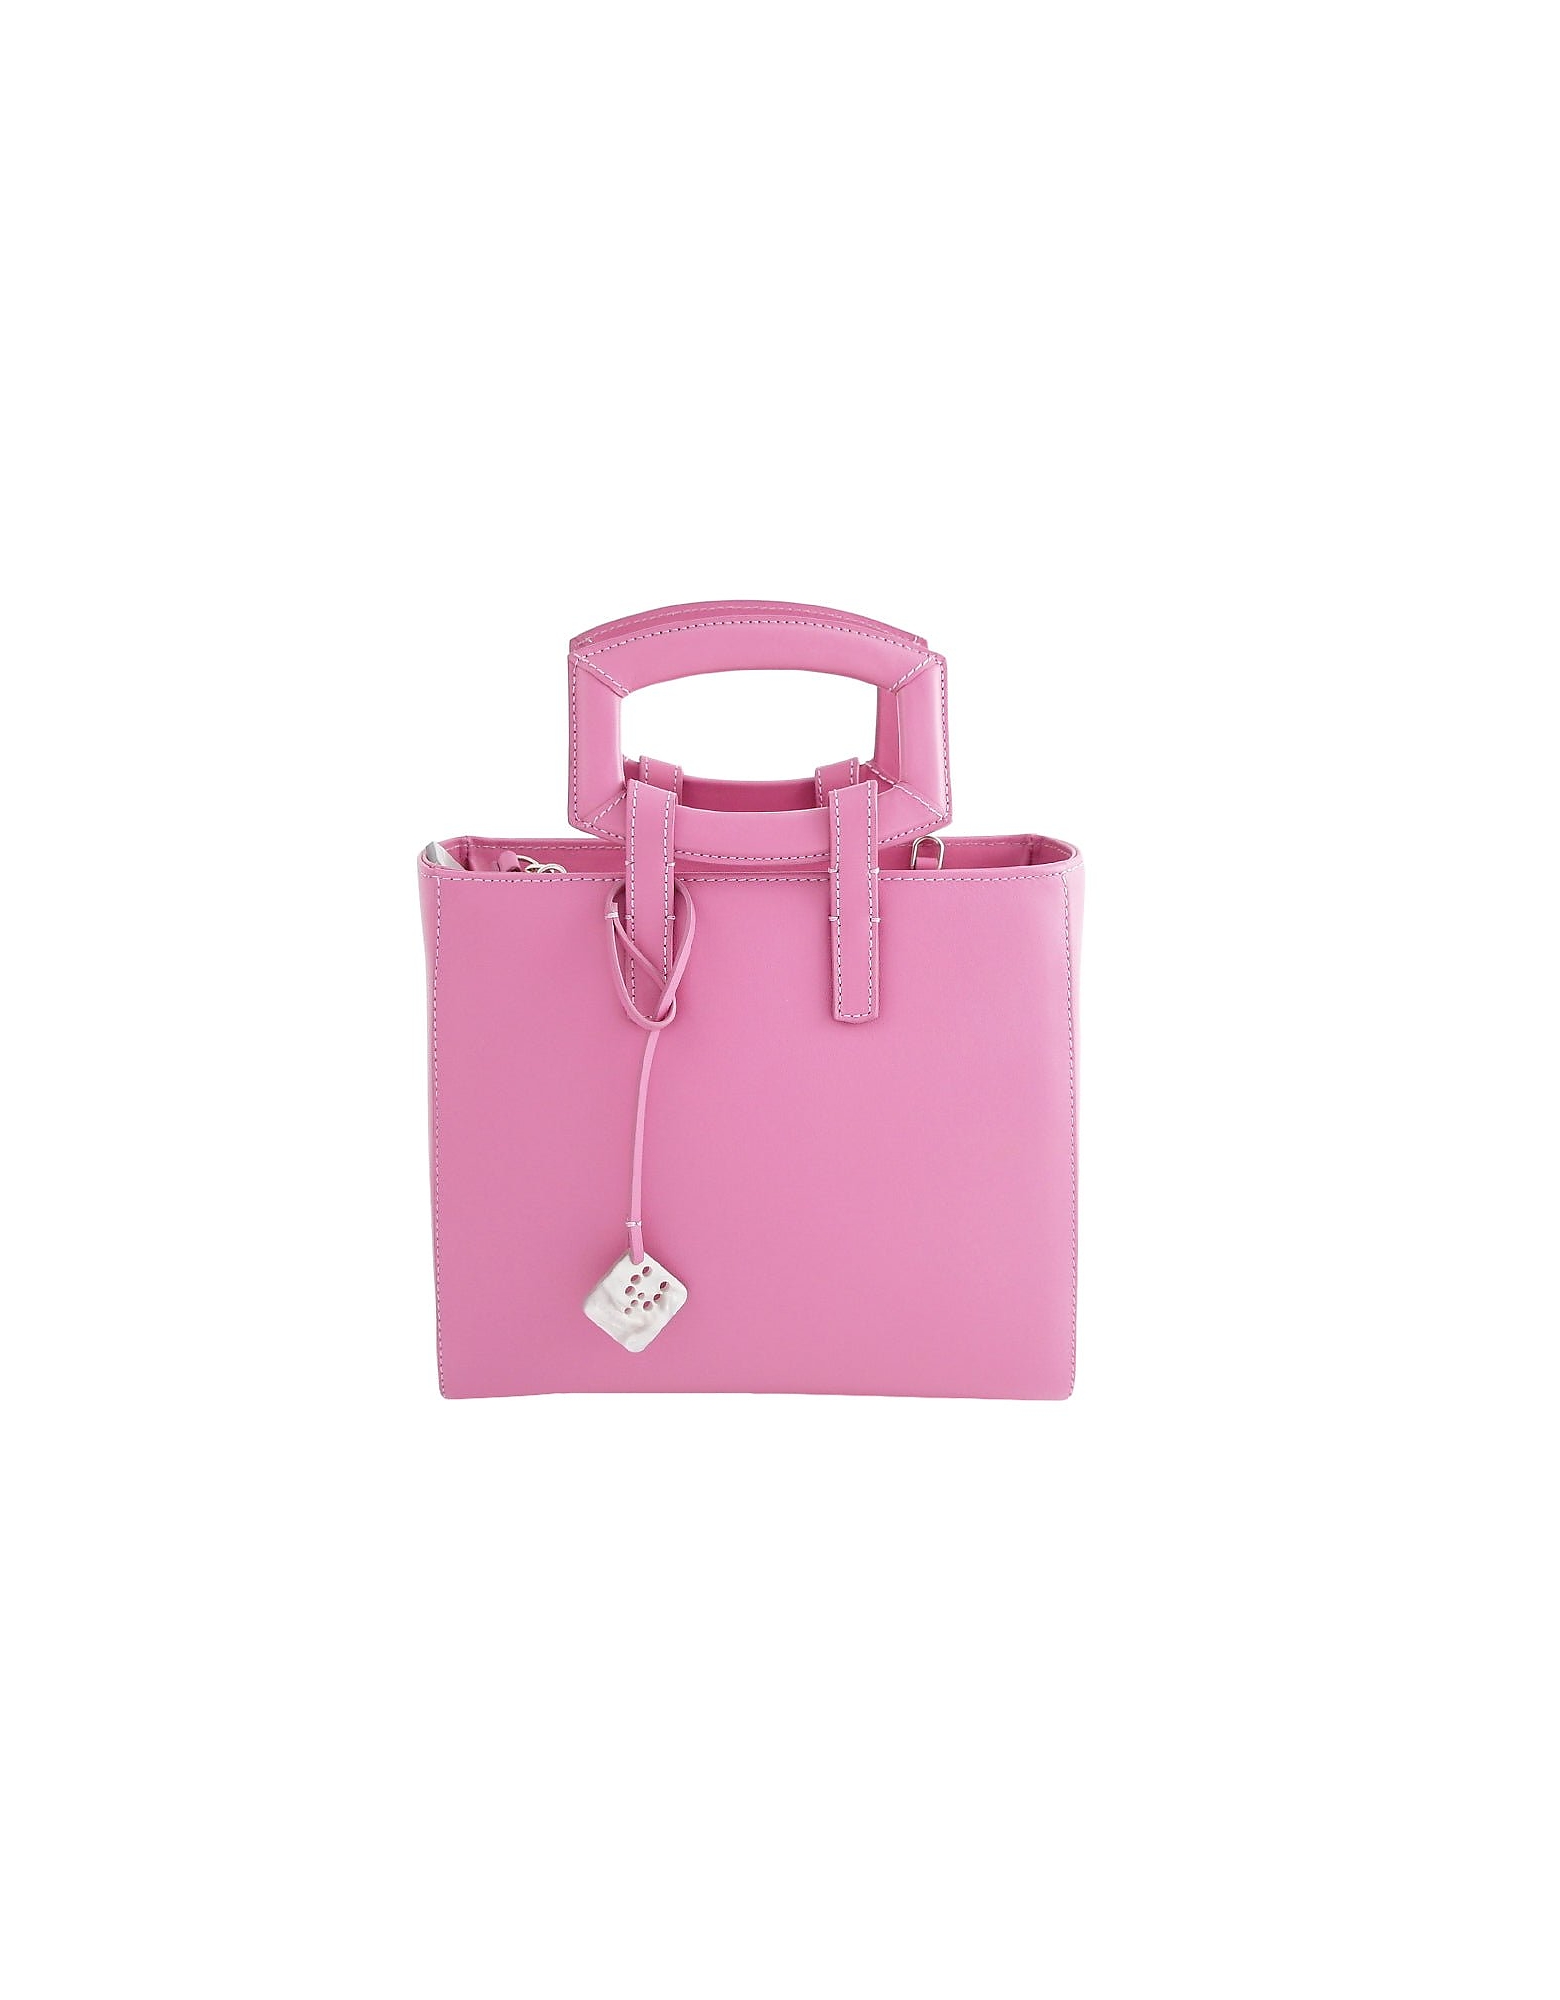 Gambari Milano Designer Handbags Bag Alissina - Top Handle Bag In Rose